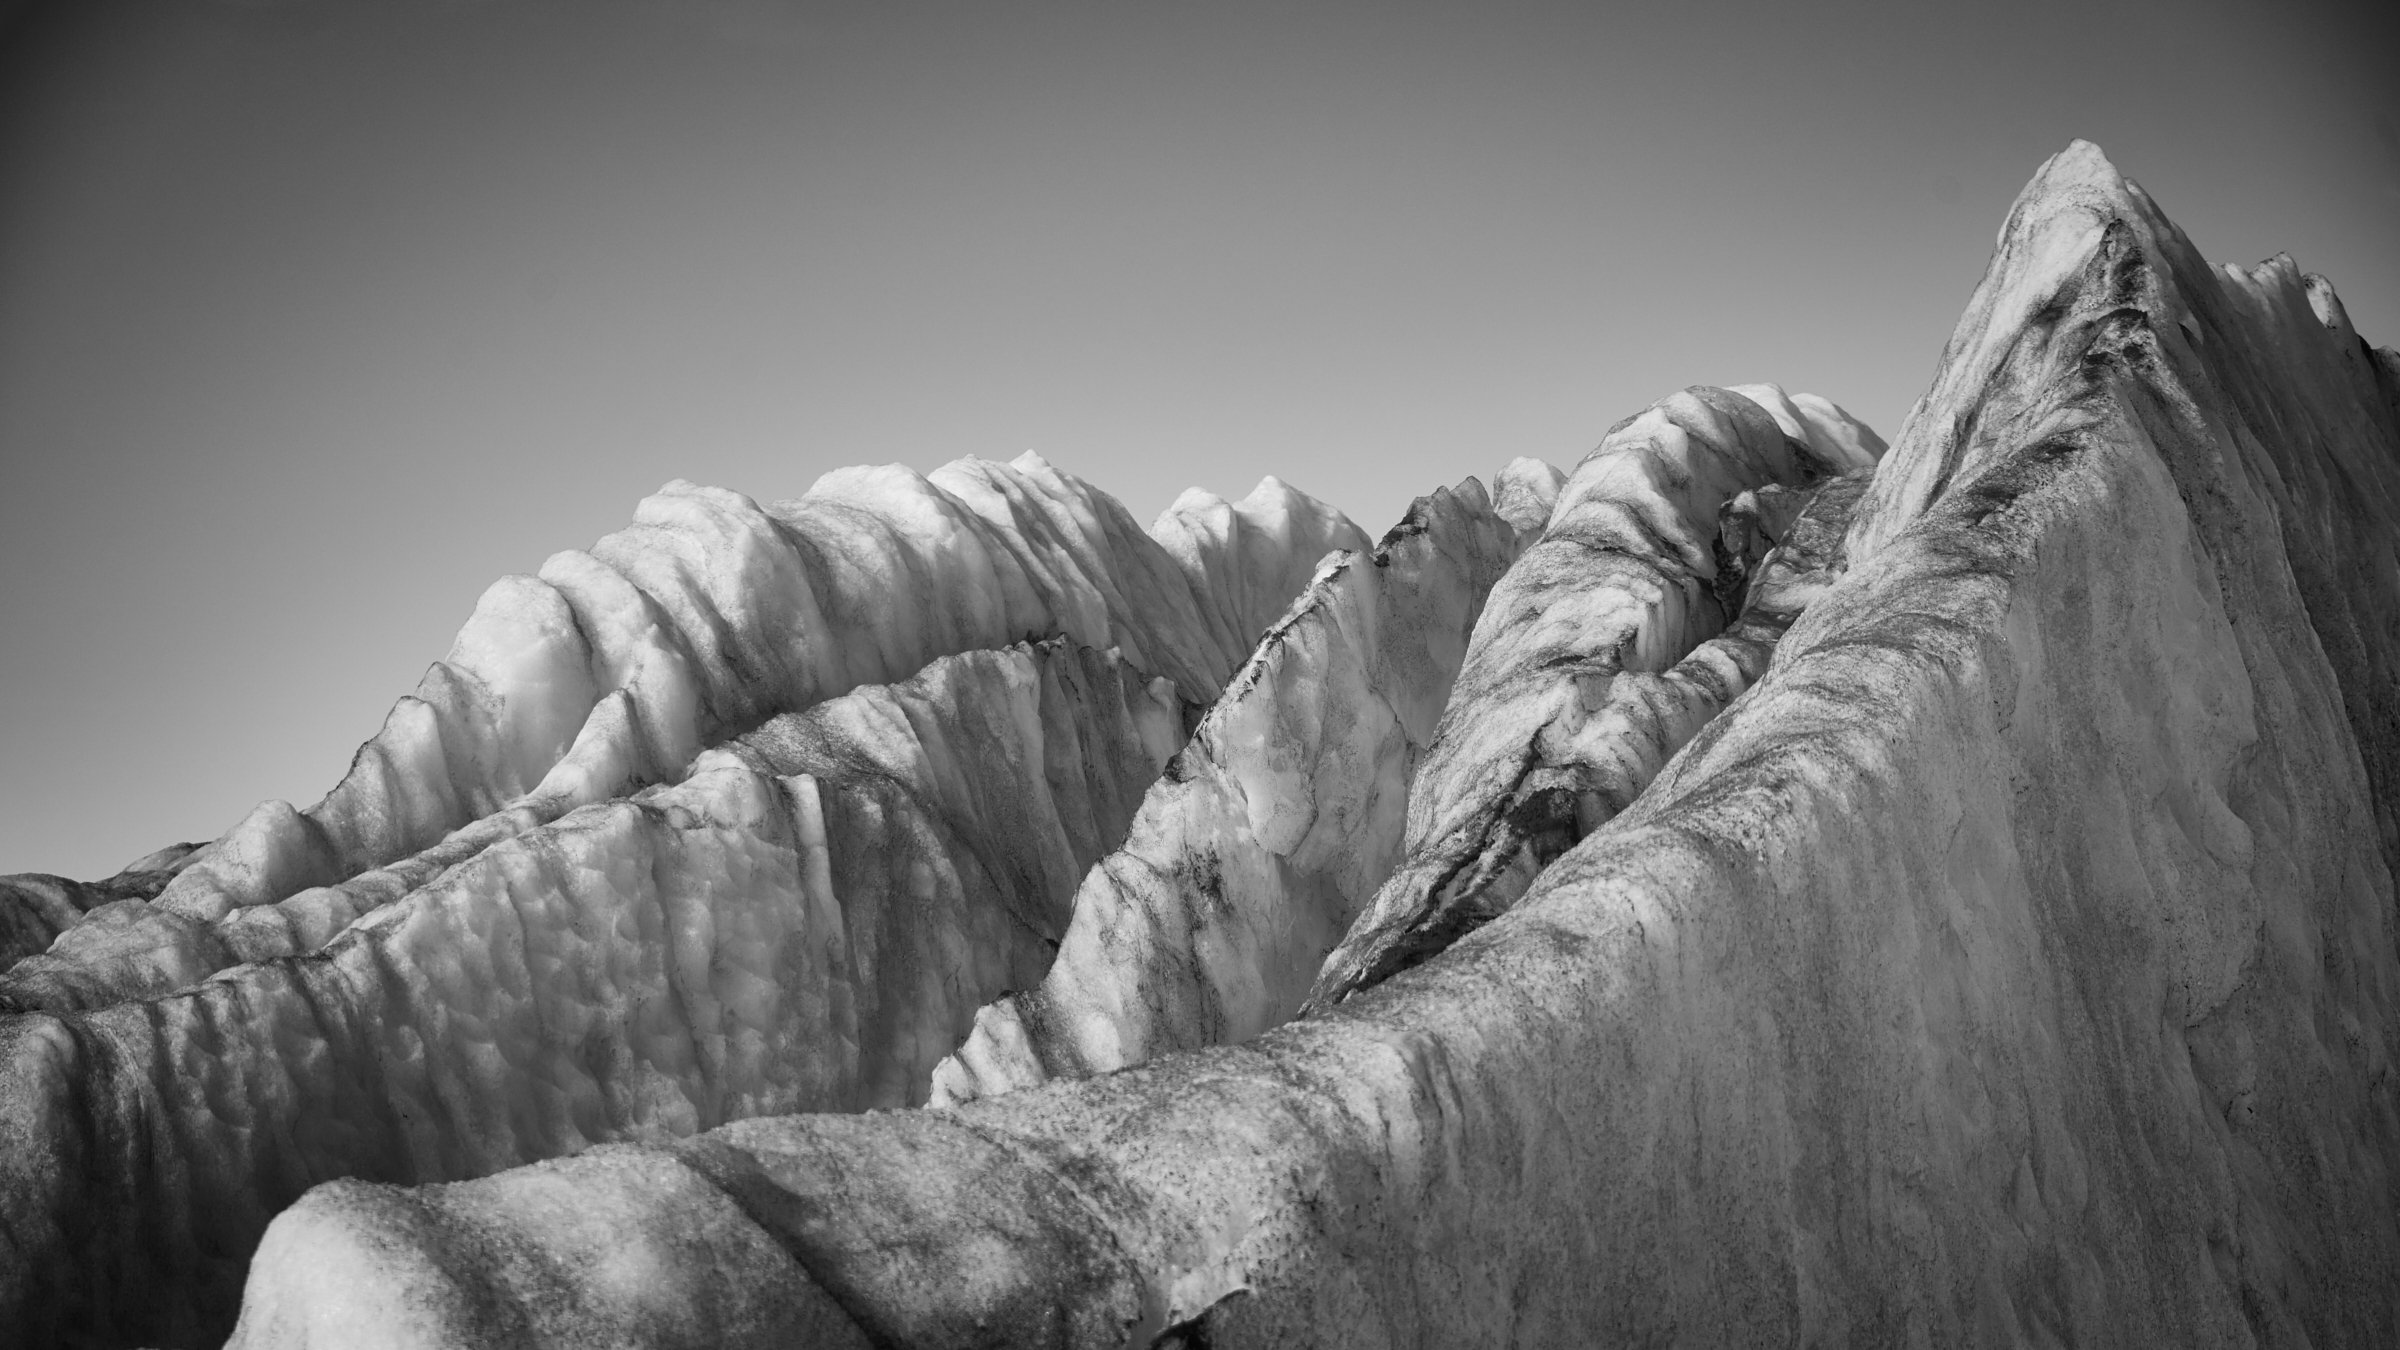 Aletschgletscher-Eisskulpturen, fotografiert vom Schweizer Fine art Fotografen Jürg Kaufmann während der zahlreichen Expeditionen auf den Gletschern in den Schweizer Alpen.